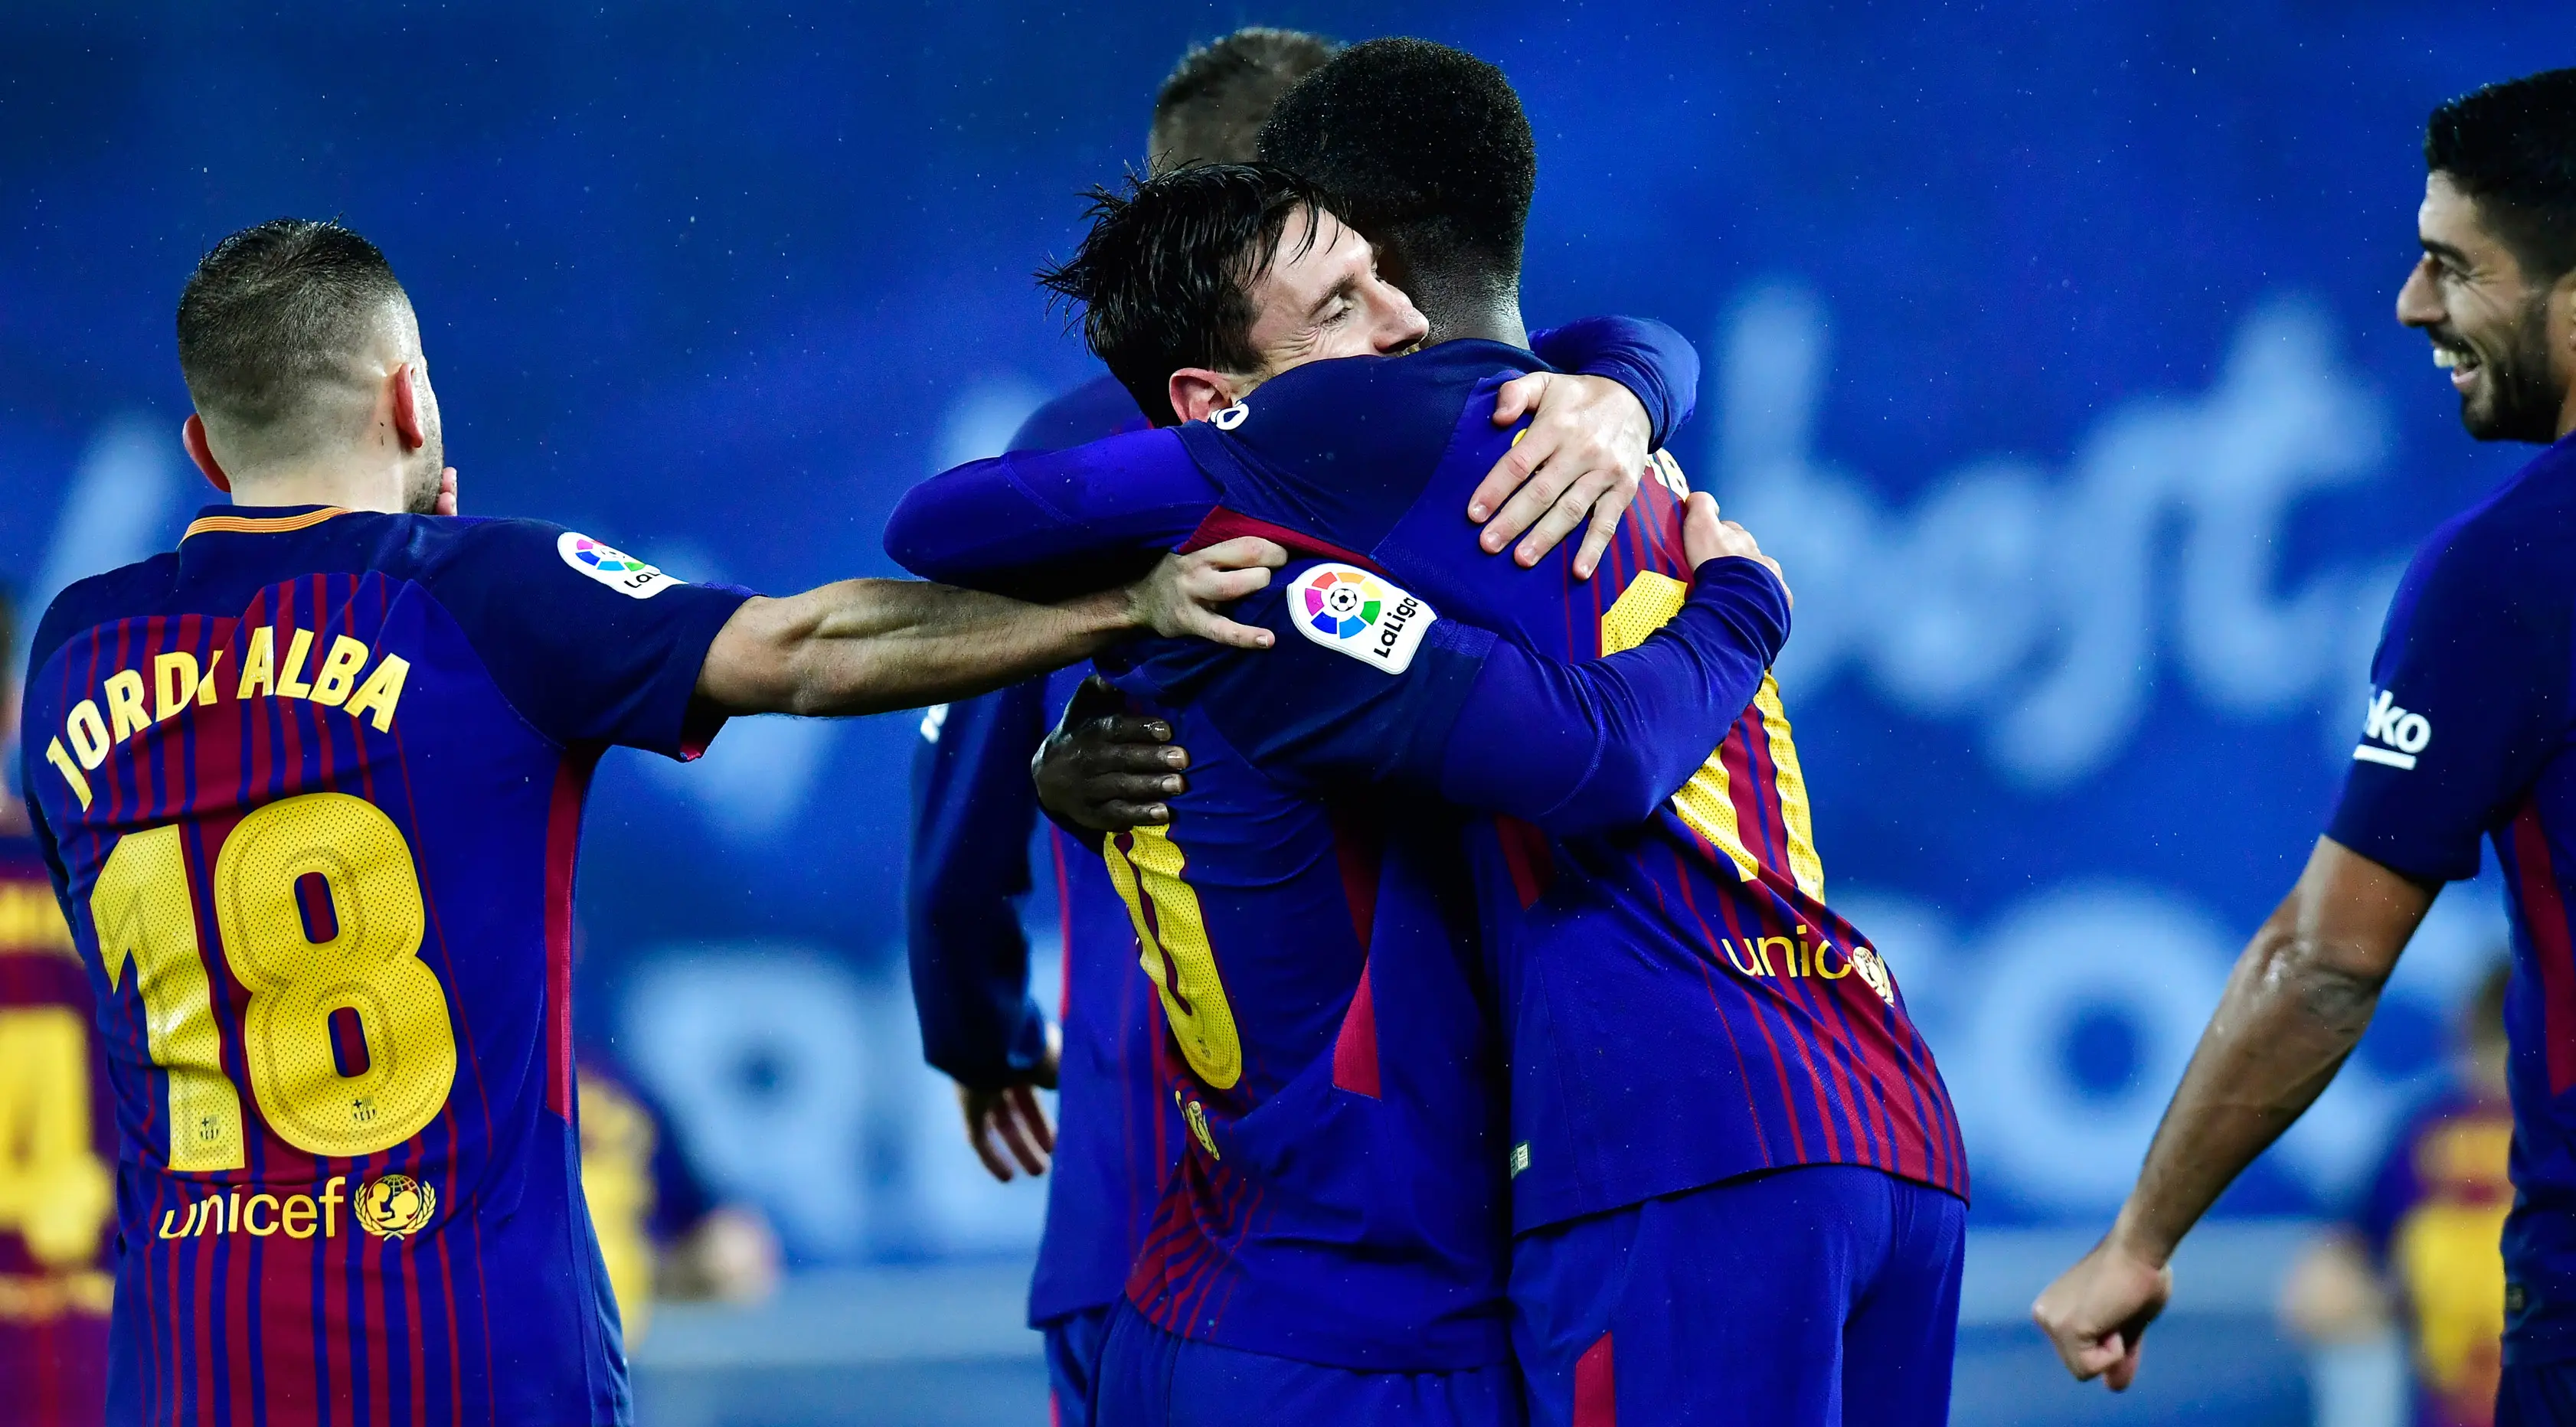 Pemain Barcelona, Lionel Messi dan Ousmane Dembele merayakan gol ke gawang Real Sociedad pada laga pekan ke-19 La Liga di Stadion Anoeta, Minggu (14/1). Kemenangan berhasil diraih Barcelona 4-2 saat menghadapi Real Sociedad. (AP/Alvaro Barrientos)